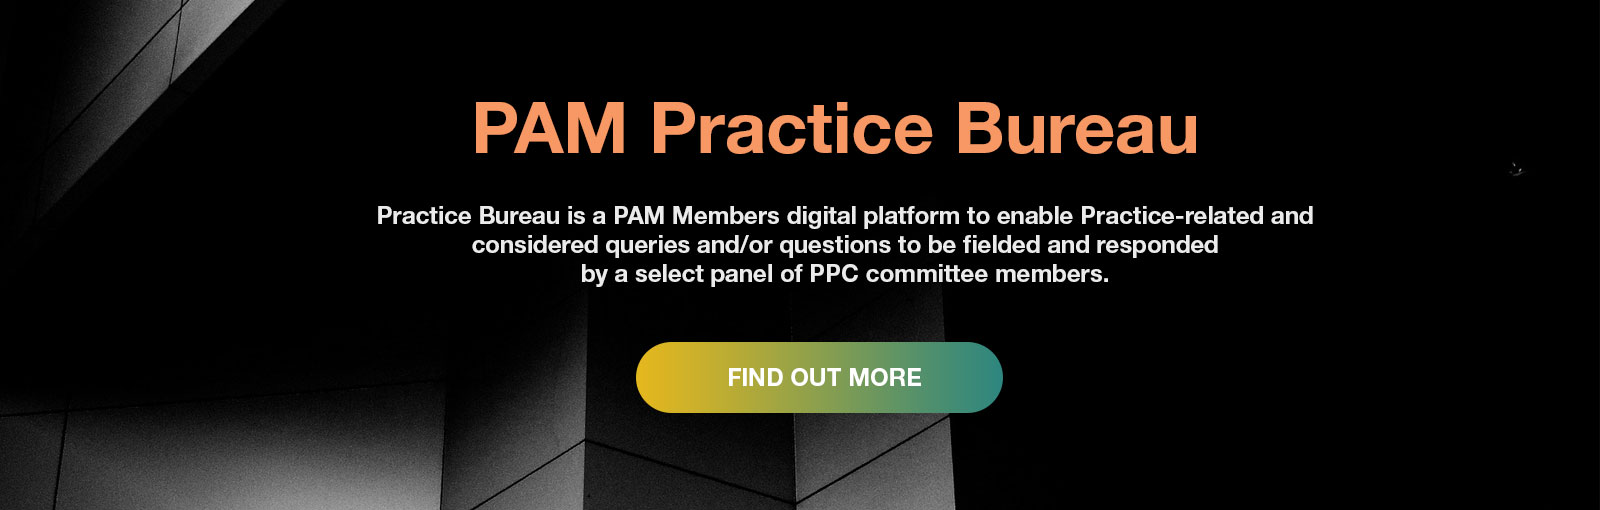 PAM Practice Bureau